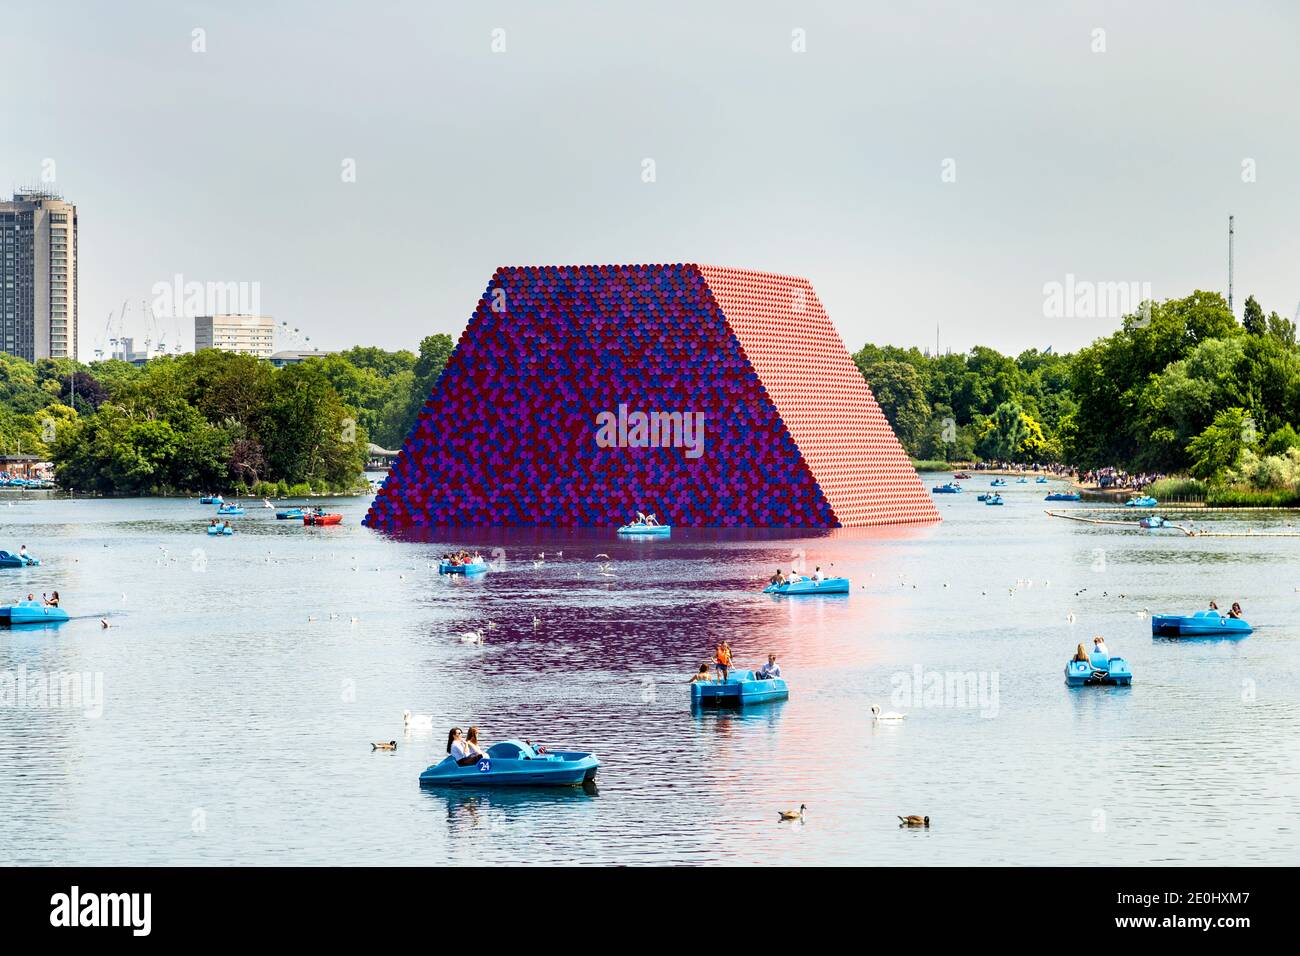 Juin 2018 - Le mastaba sculpture par Christo et Jeanne-Claude flottant dans le lac Serpentine, à Hyde Park, Londres, UK Banque D'Images